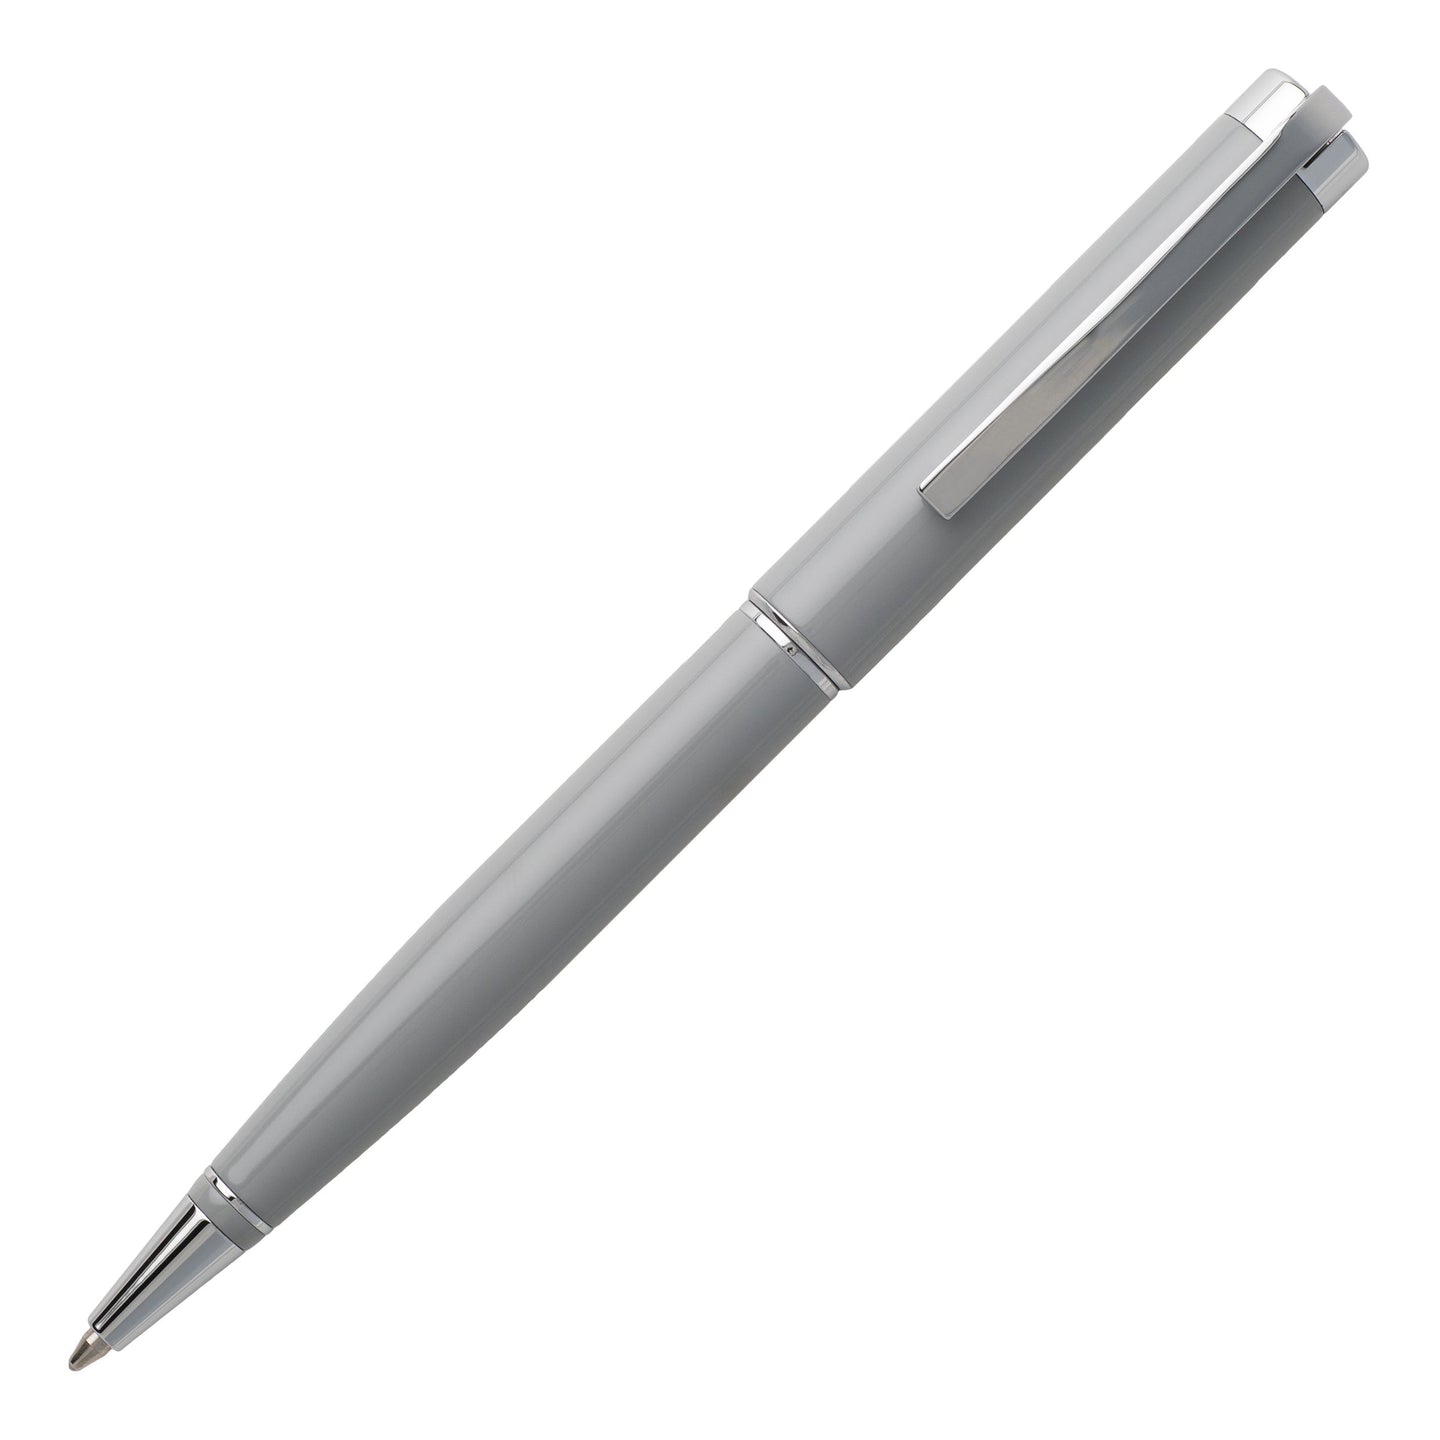 Der Hugo Boss ACE Light Grey Kugelschreiber ist einfach besonders. Finden Sie Ihren ACE Light Grey Kugelschreiber bei uns im Onlineshop. Schnelle Lieferung und hohe Kundenzufriedenheit.